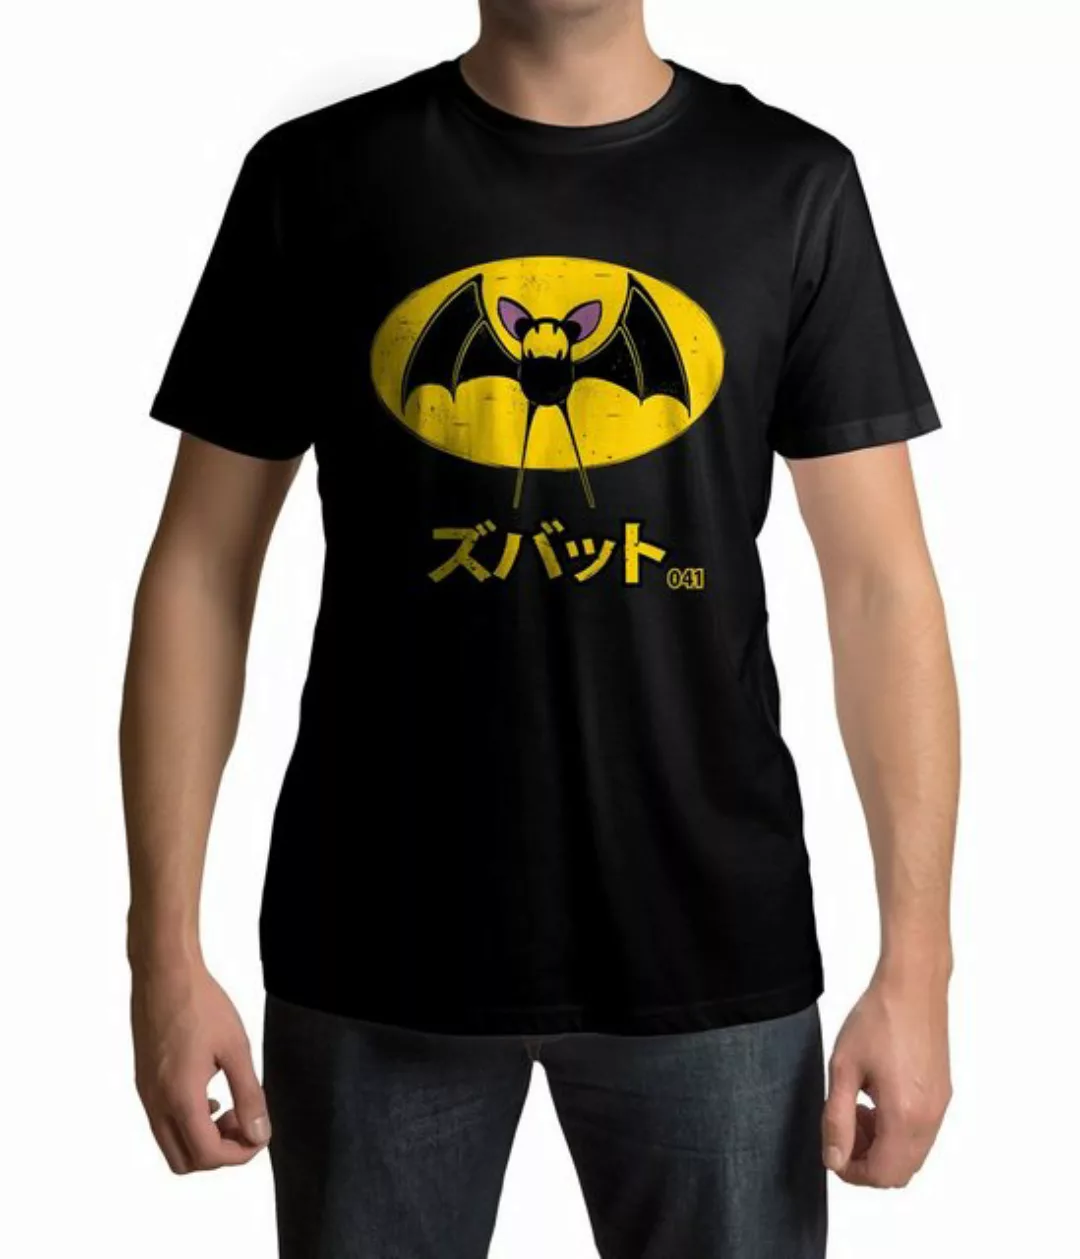 Lootchest T-Shirt Bat 041 günstig online kaufen